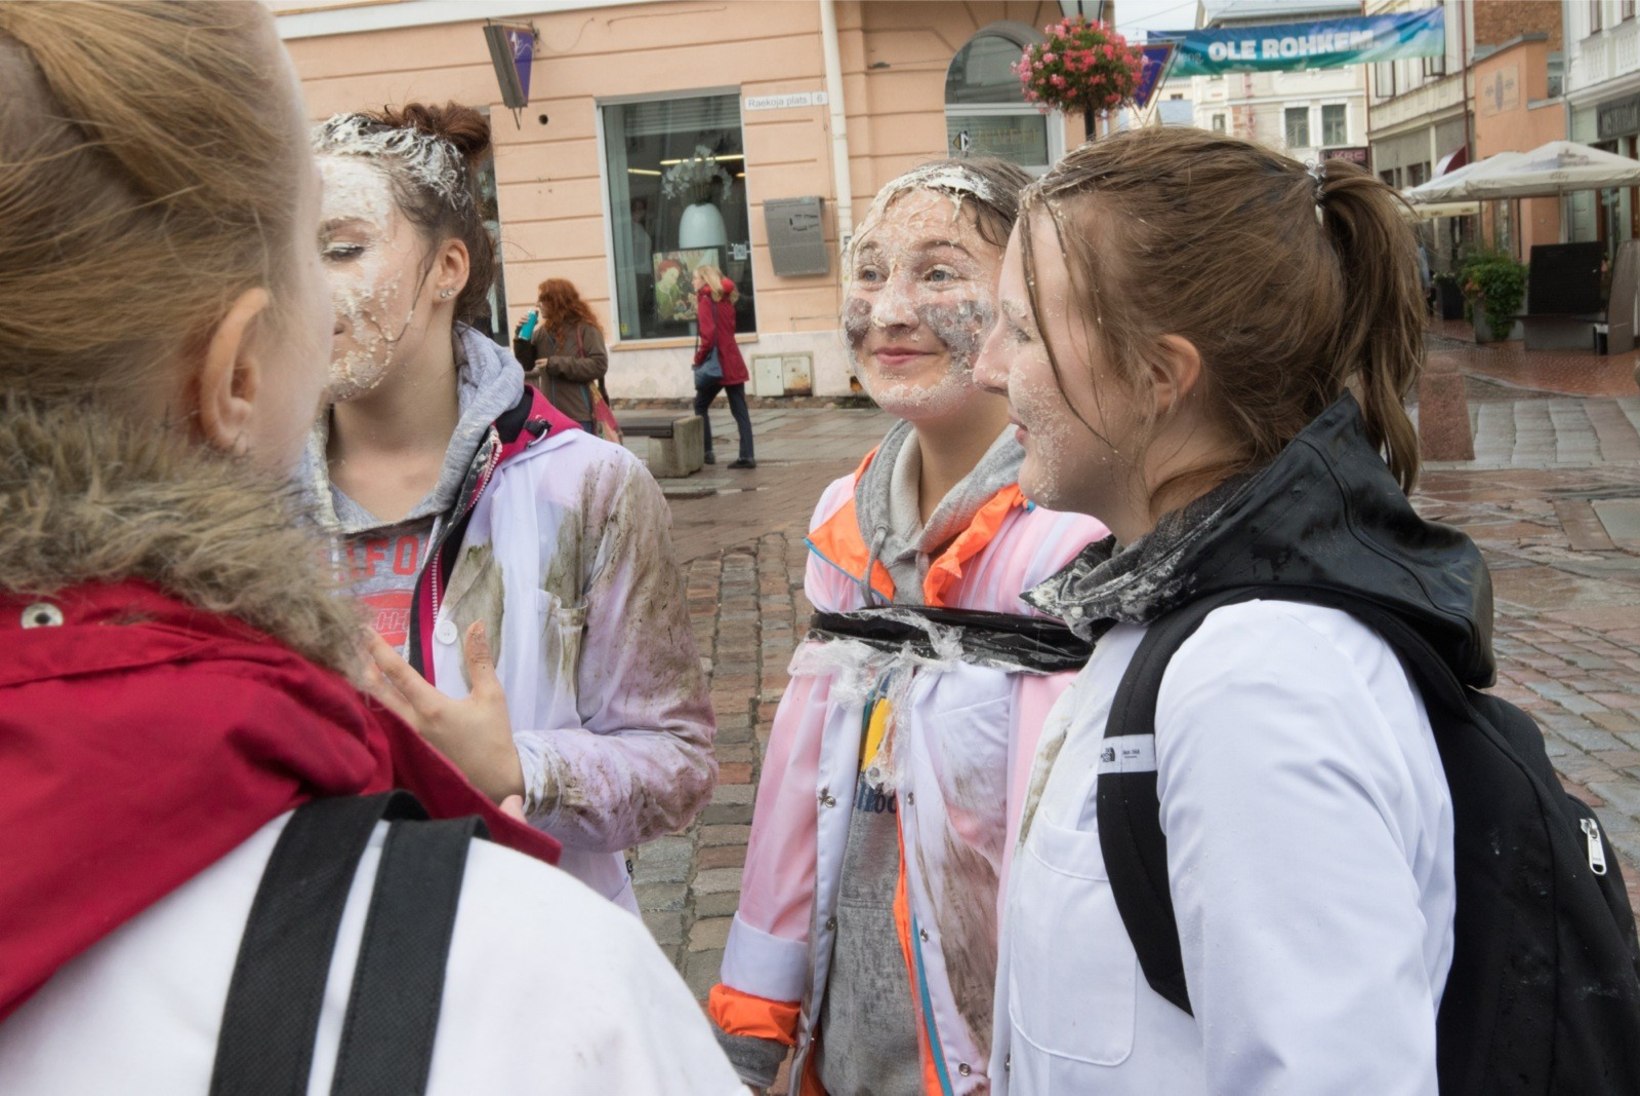 ÕHTULEHE VIDEO JA GALERII | Tartu tudengid pesid hambaharjadega Reakoja platsis kivisid